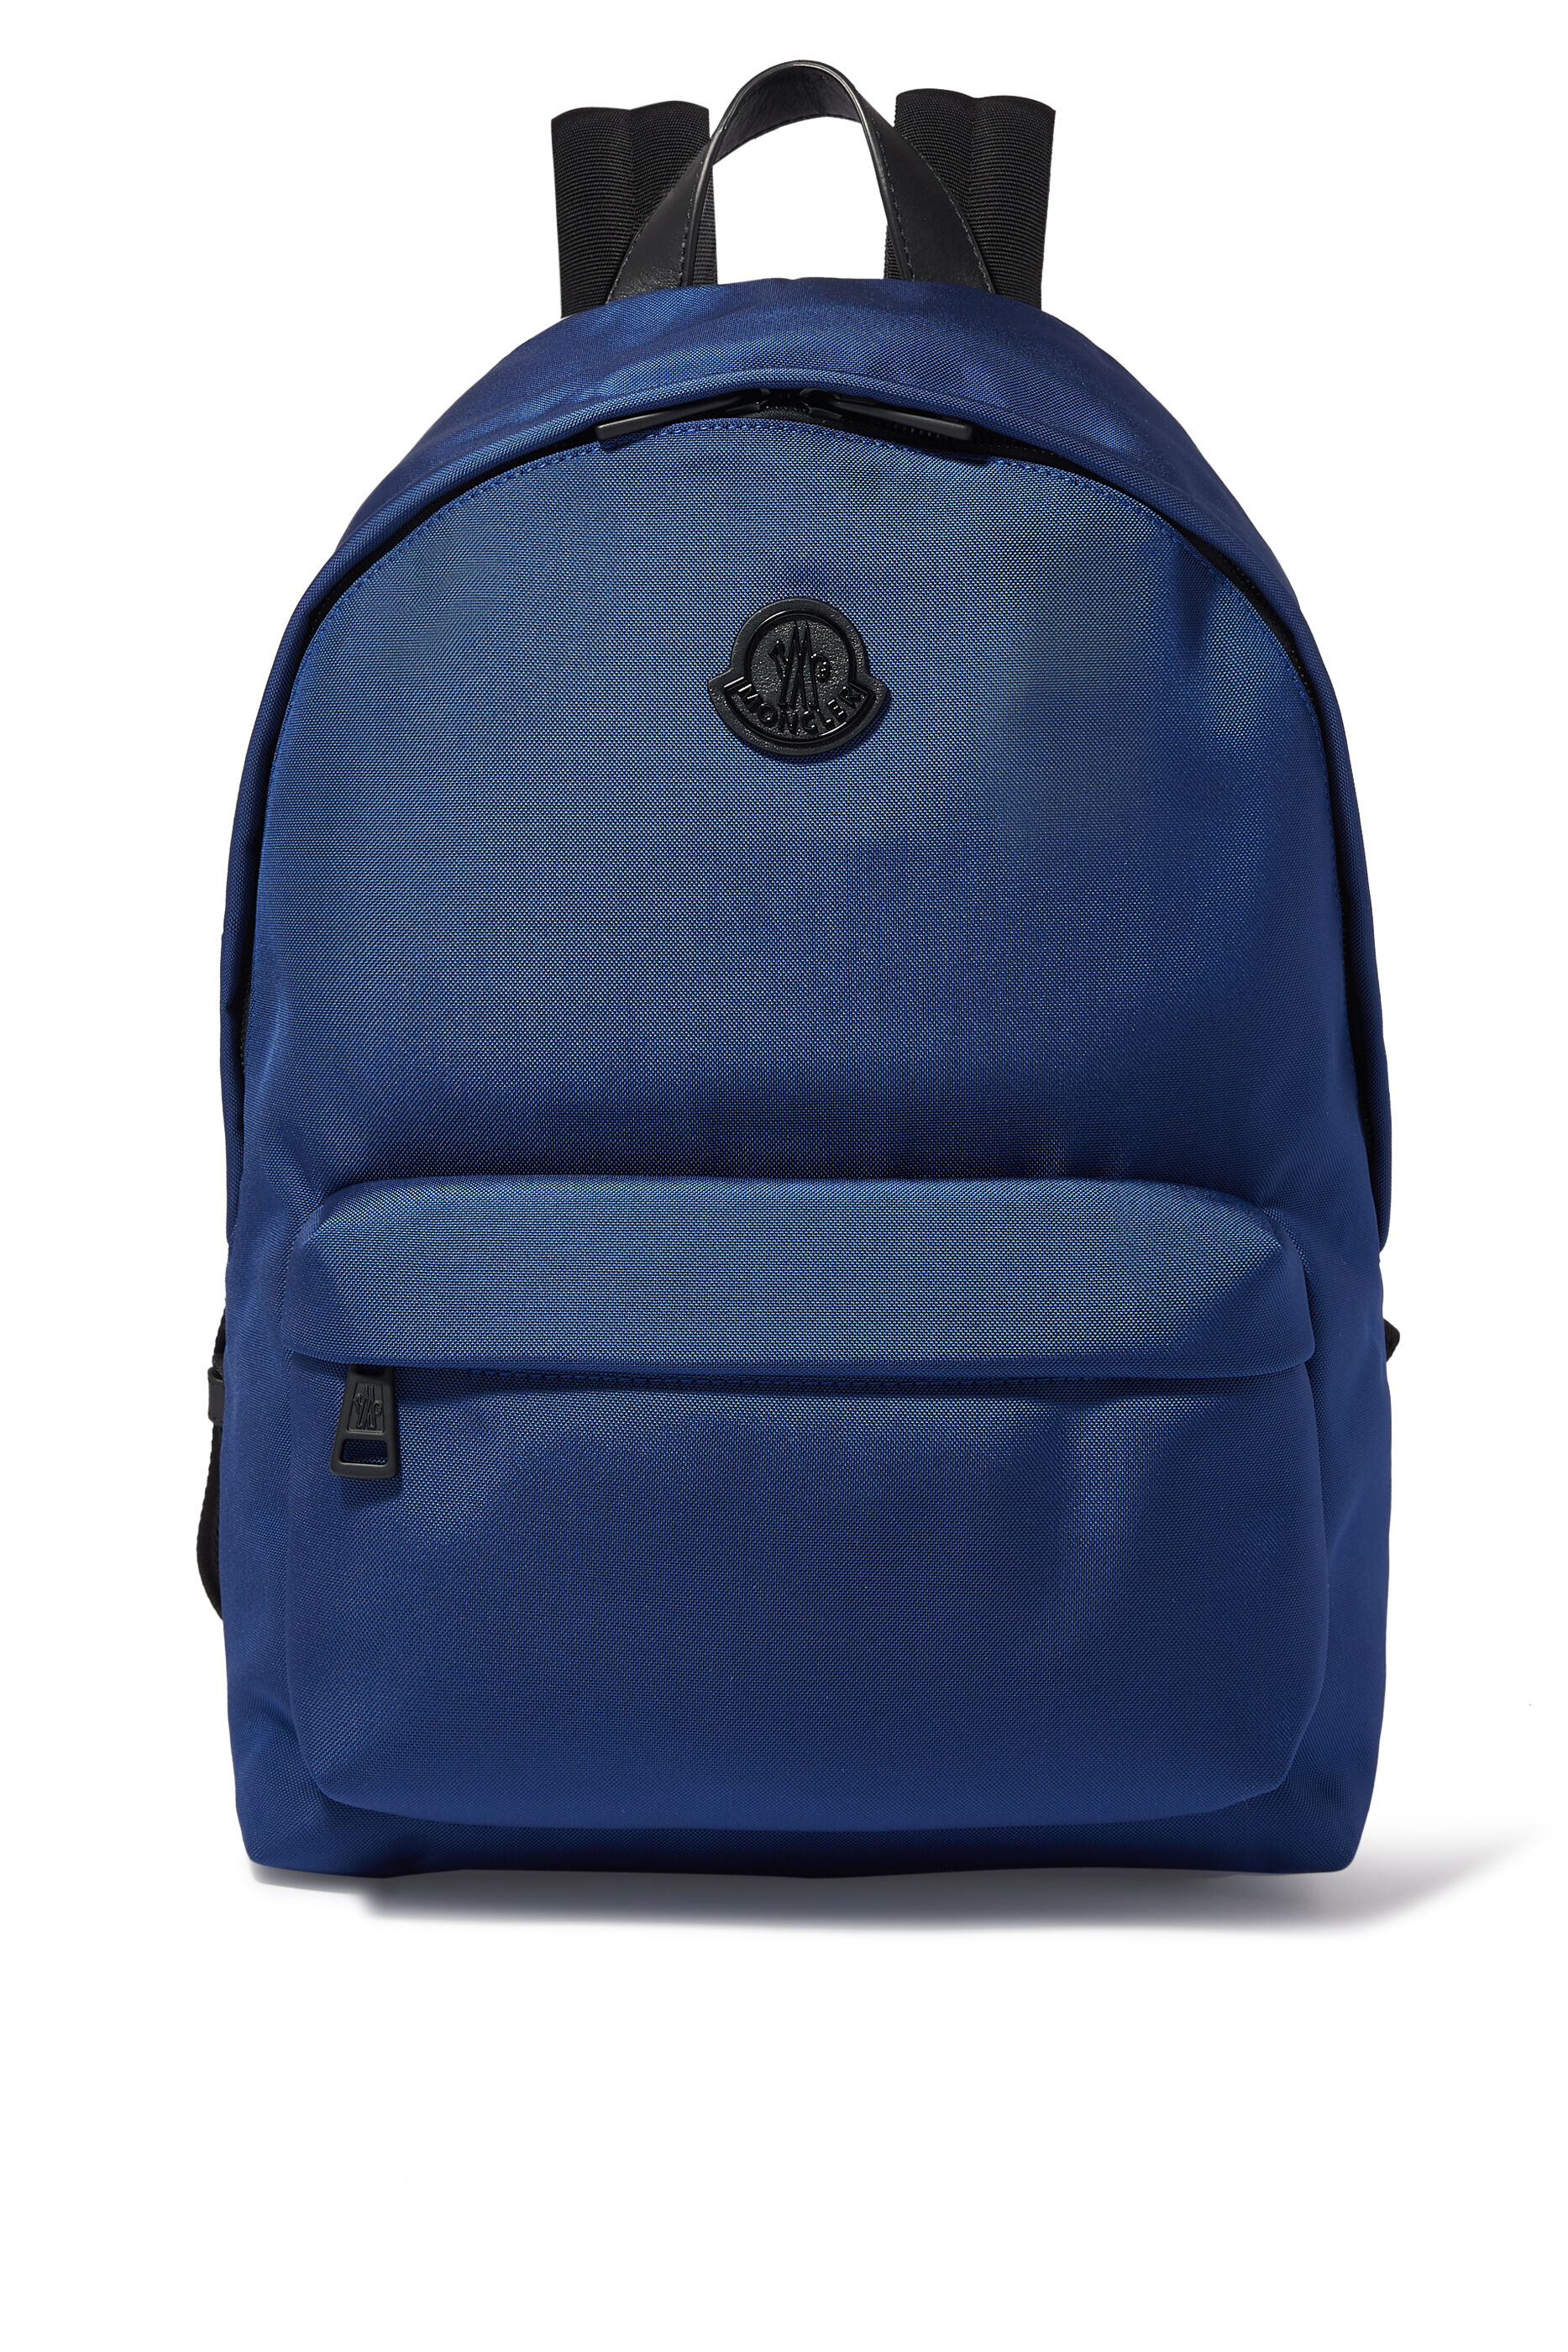 Bloomingdales Men Accessories Bags Laptop Bags William Backpack 